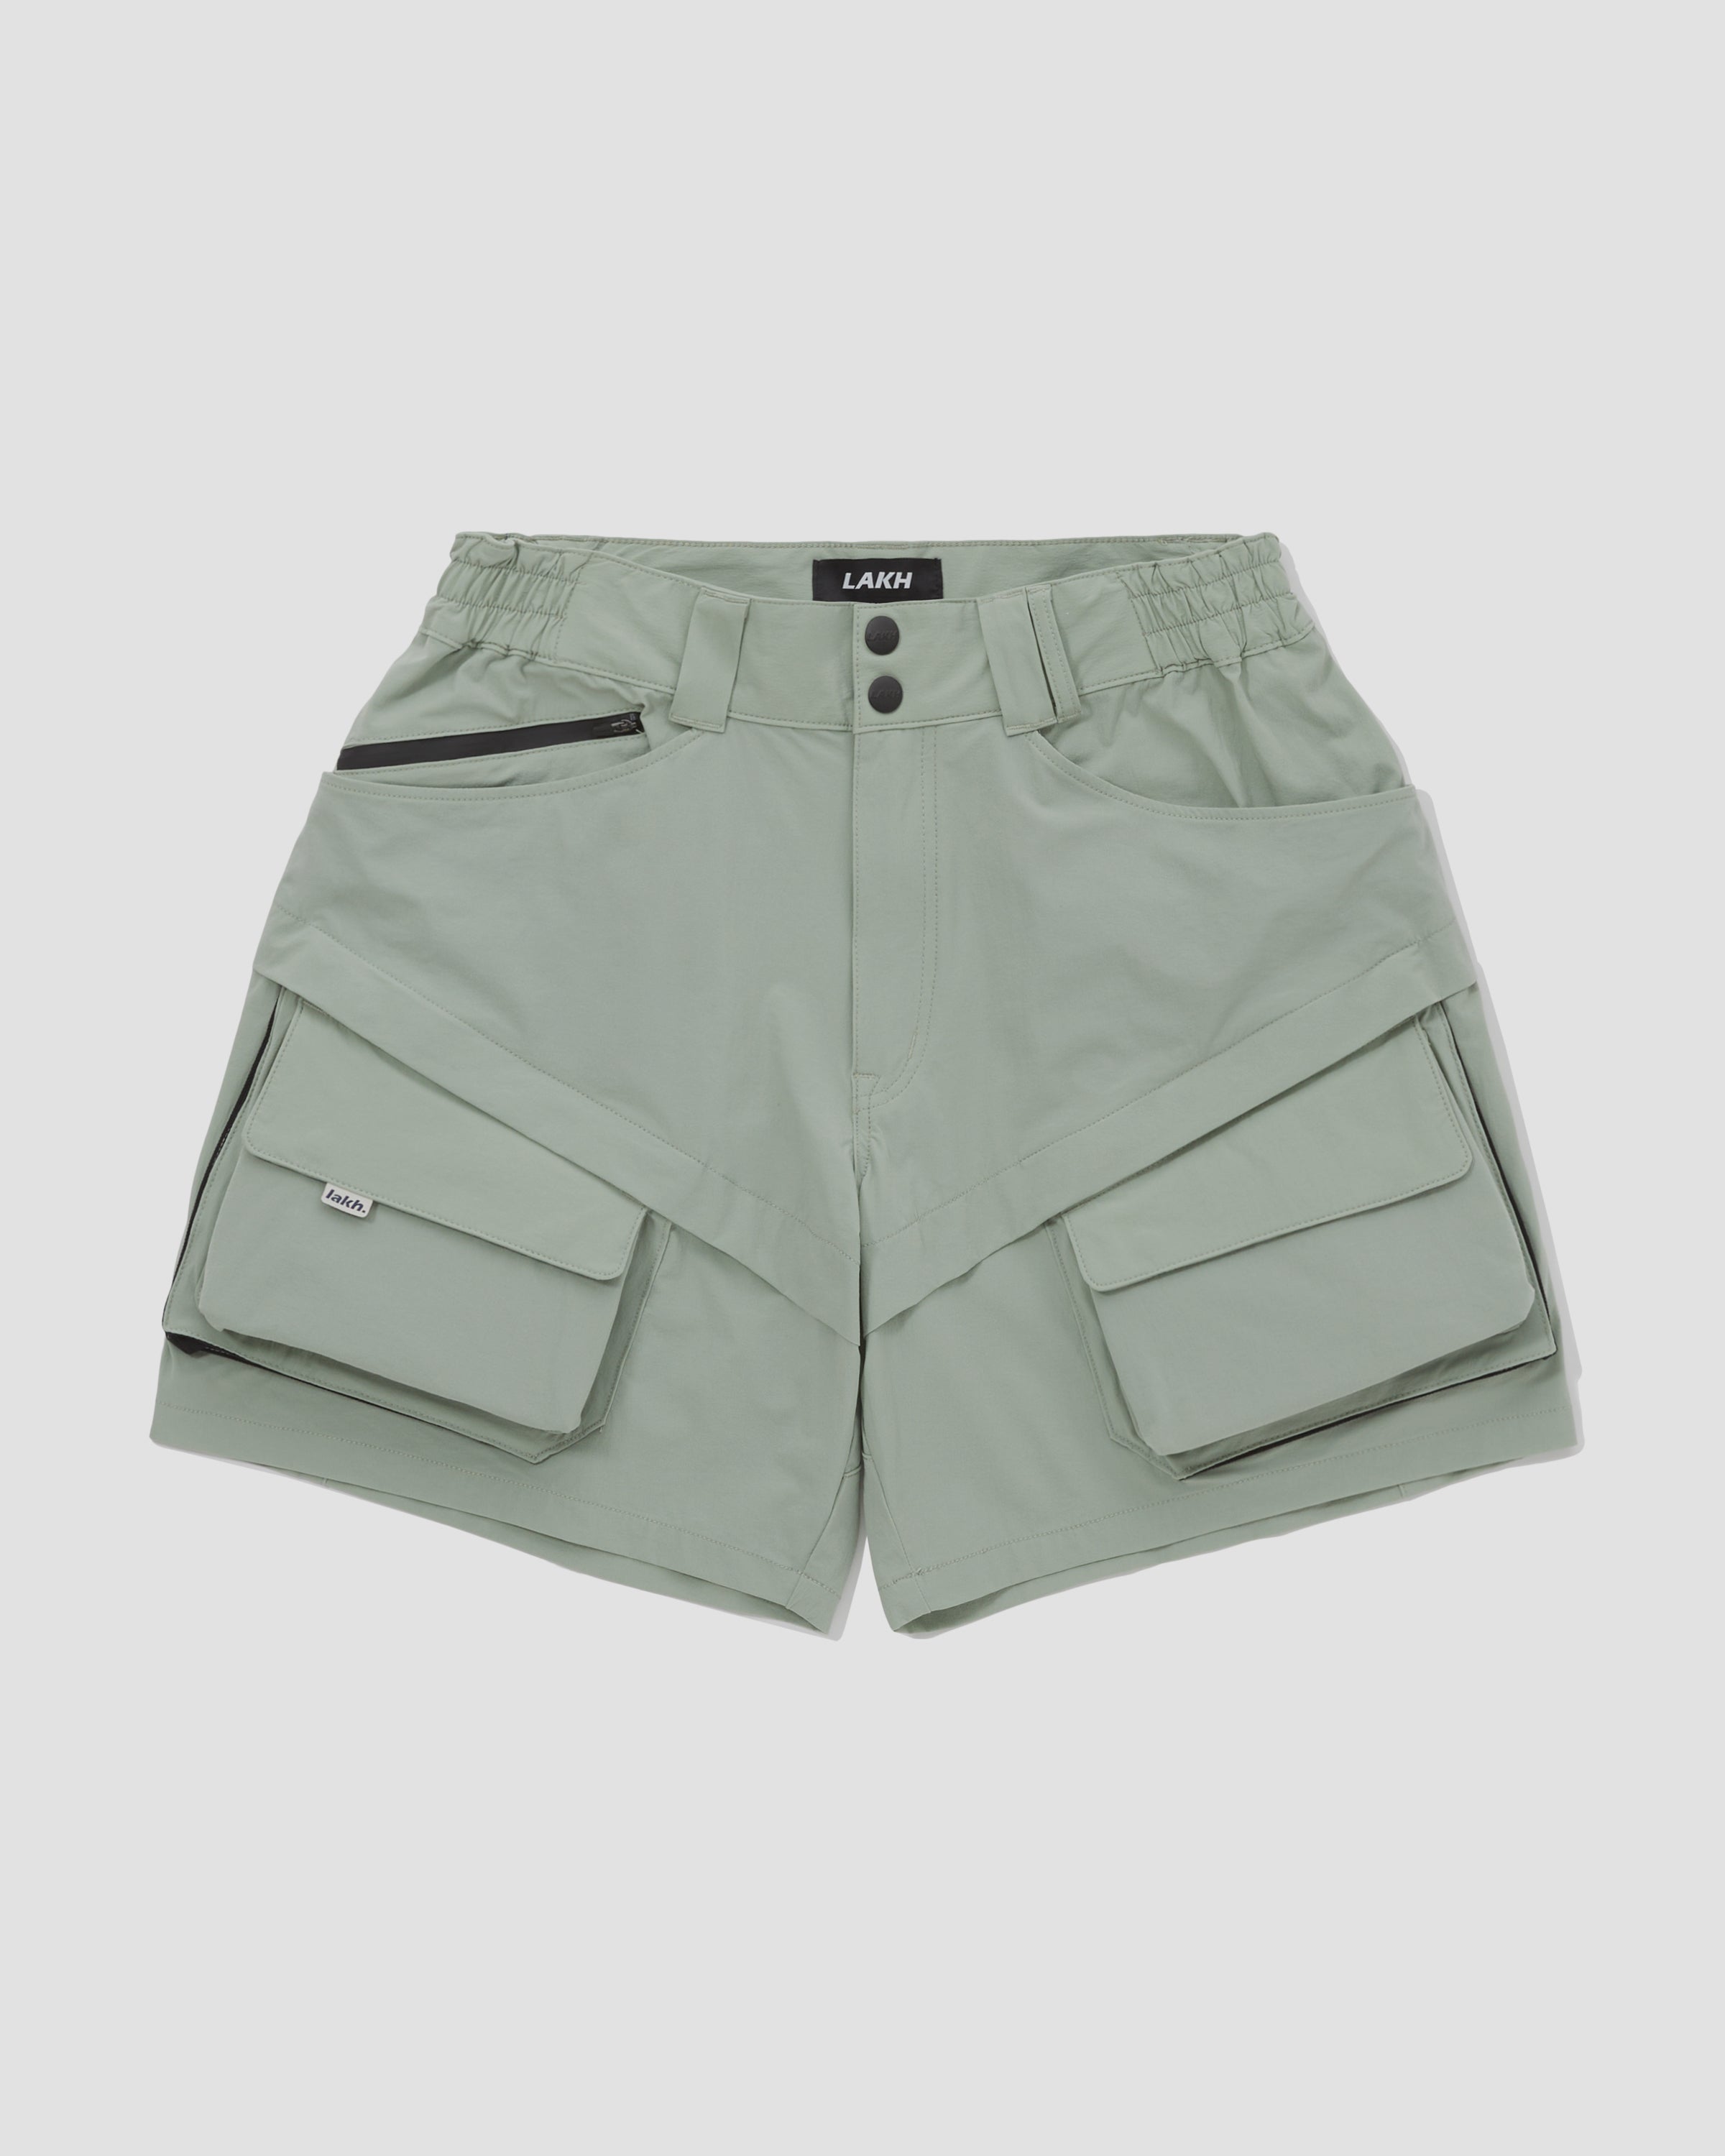 Ultra Lightweight Utility Shorts - Mint